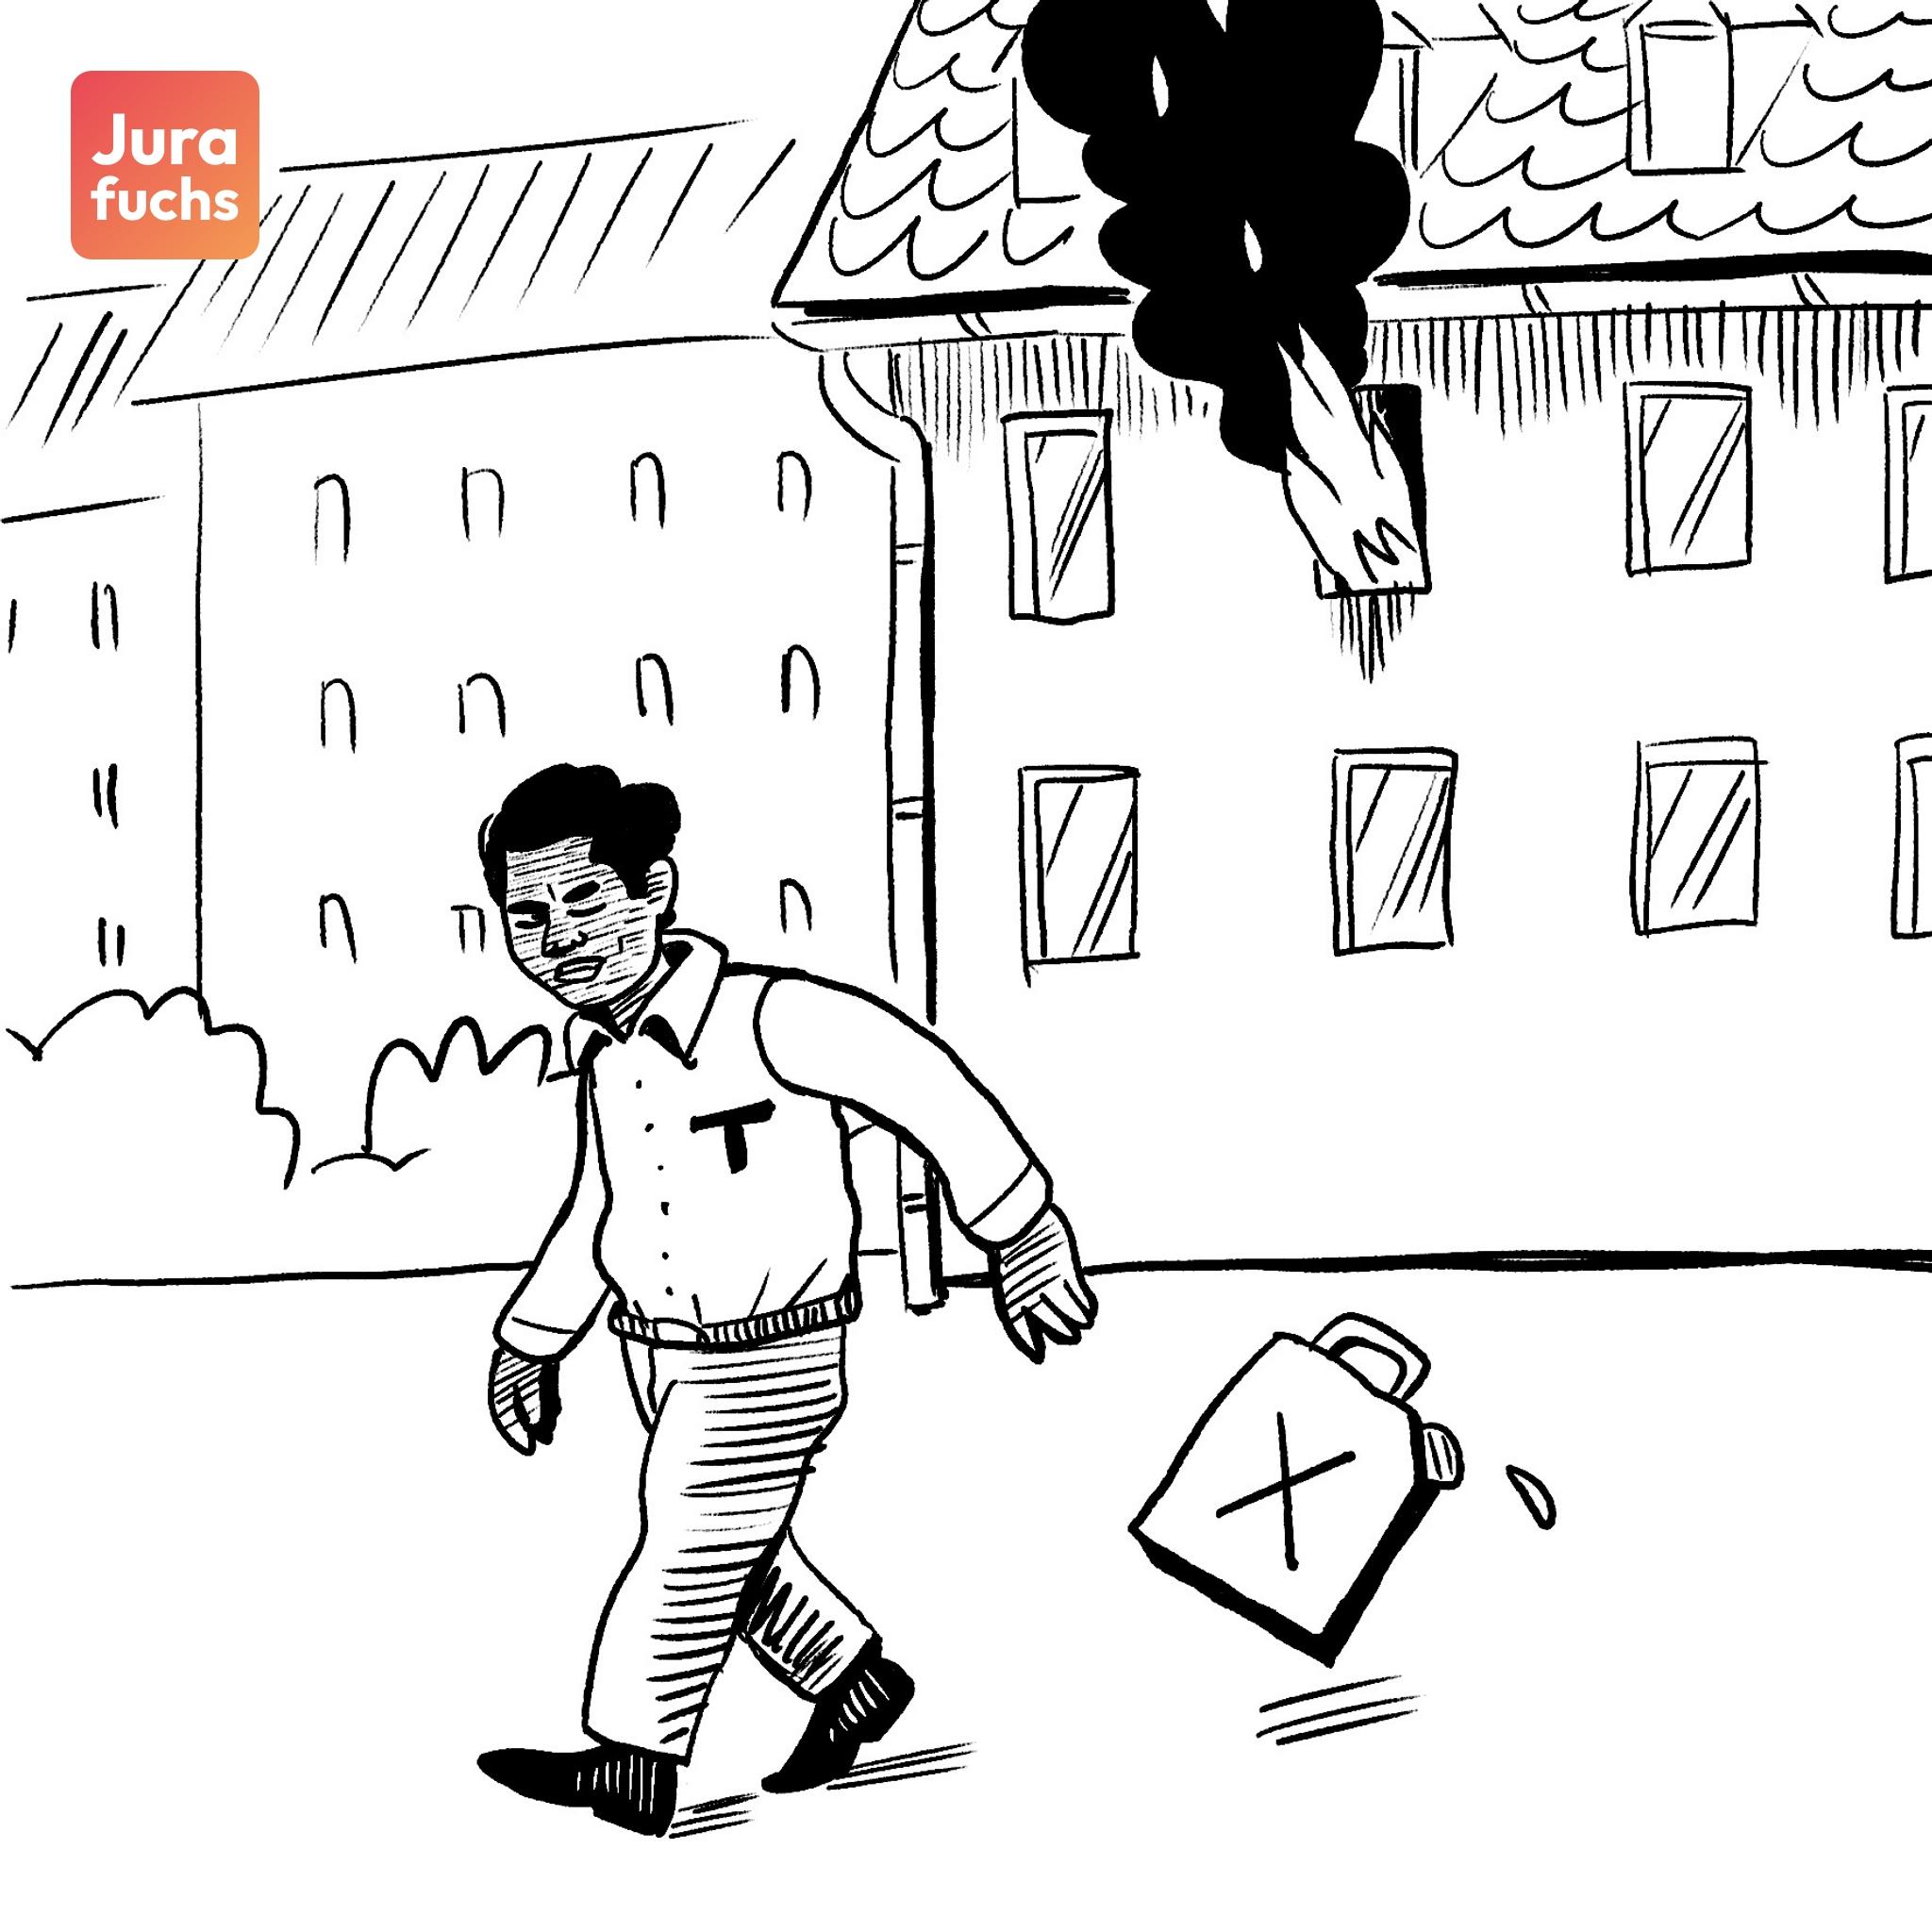 Jurafuchs-Illustration: T läuft von einem Wohnhaus weg, in dem ein durch ihn angezündetes Zimmer in Brand steht. 